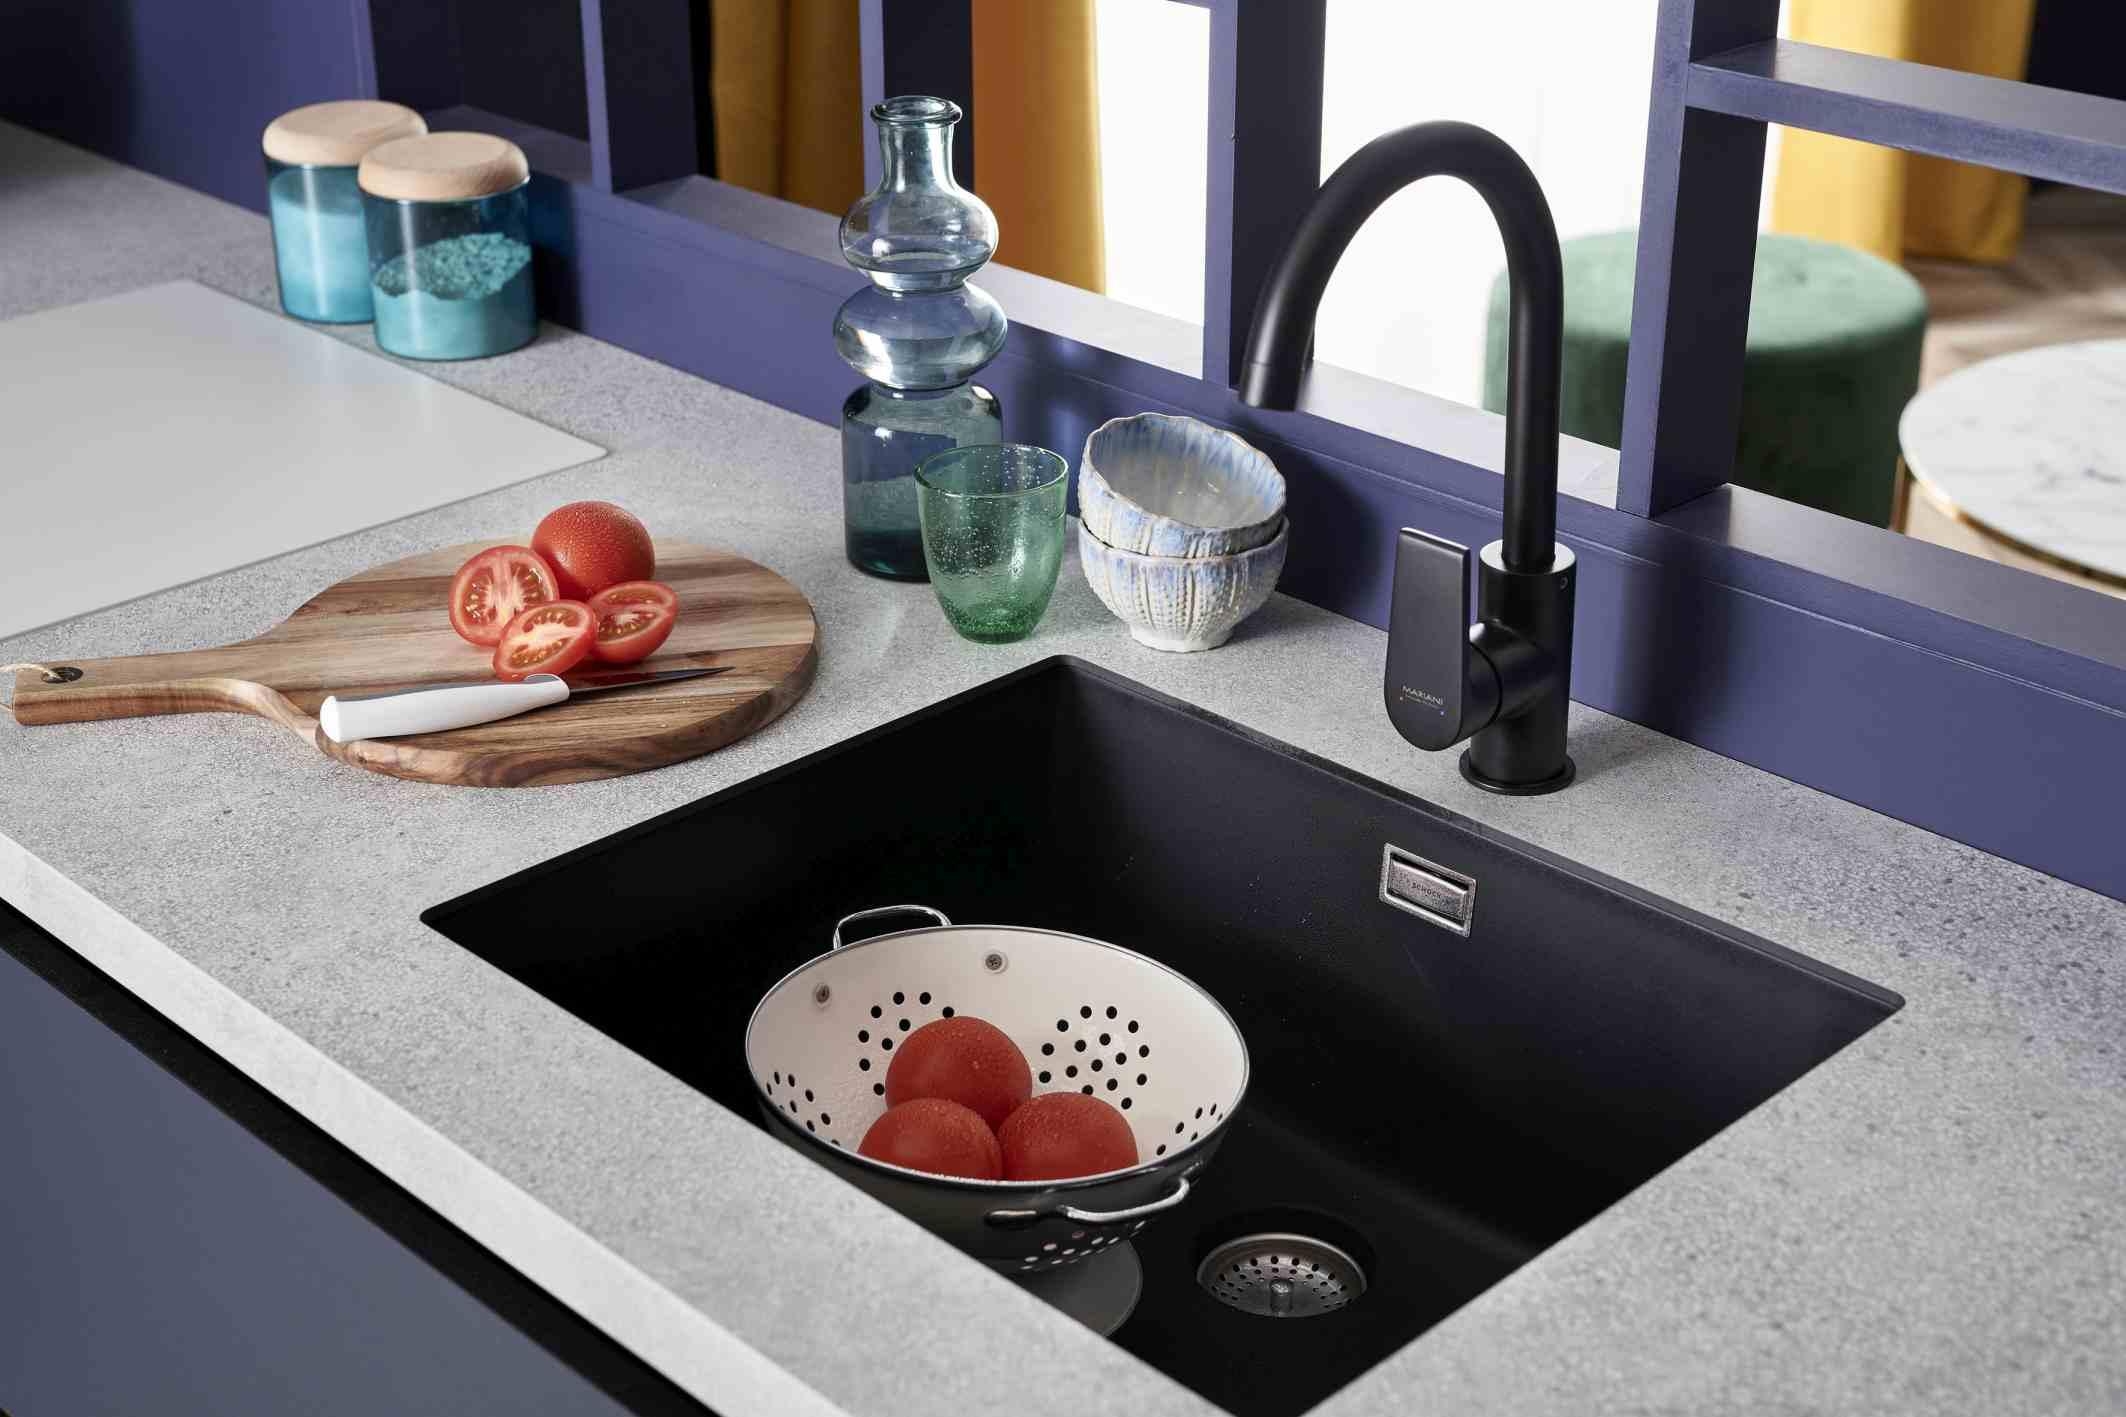 Leichtes Spül: Küchenarbeit fließend erledigen. SCHMIDT hat für jede Anforderung die beste Lösung. www.home-design.schmidt